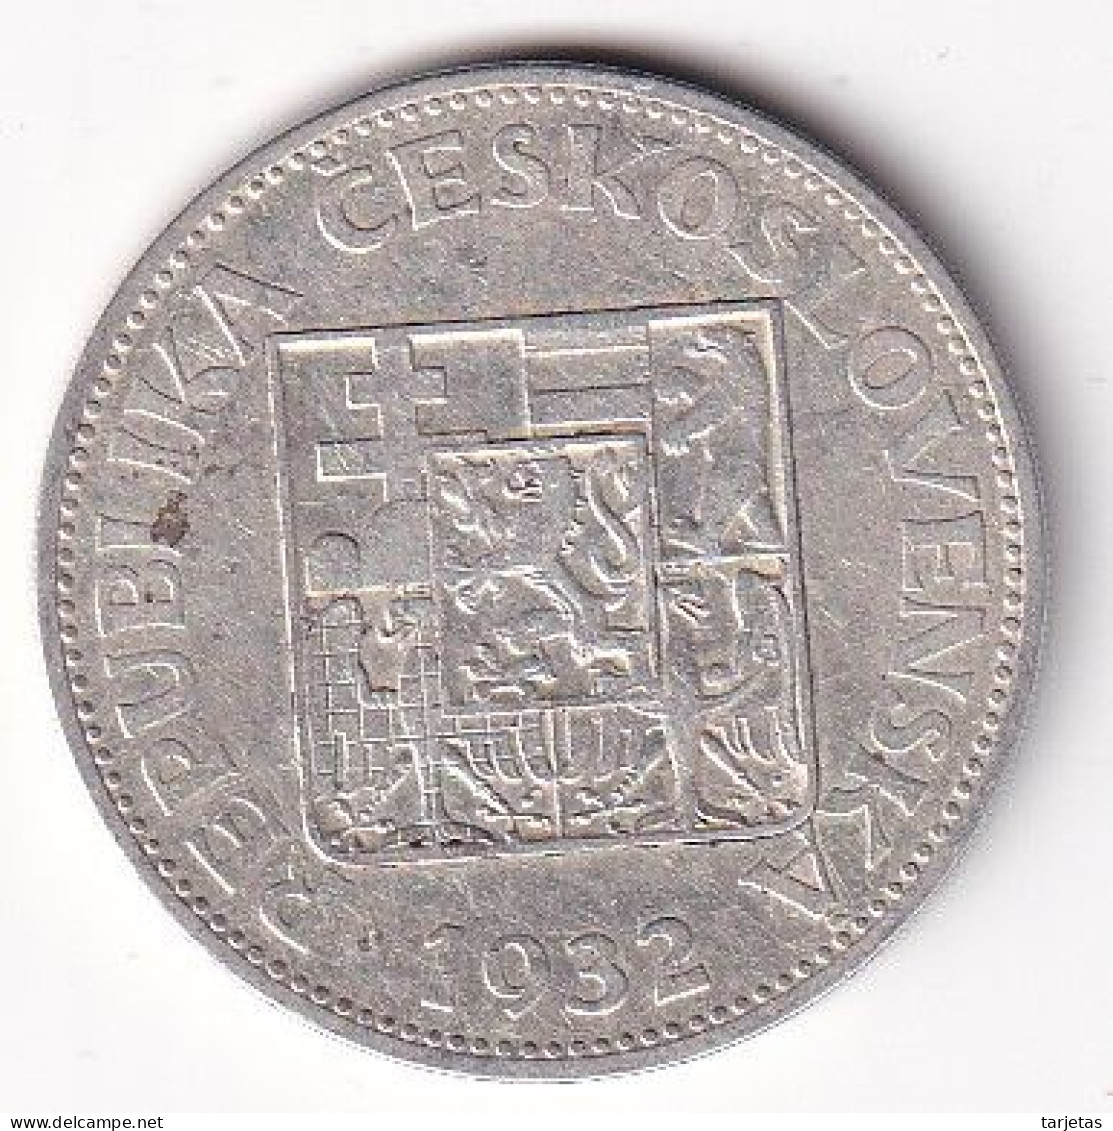 MONEDA DE PLATA DE CHECOSLOVAQUIA DE 10 KORUN DEL AÑO 1932 (COIN) SILVER-ARGENT - Cecoslovacchia